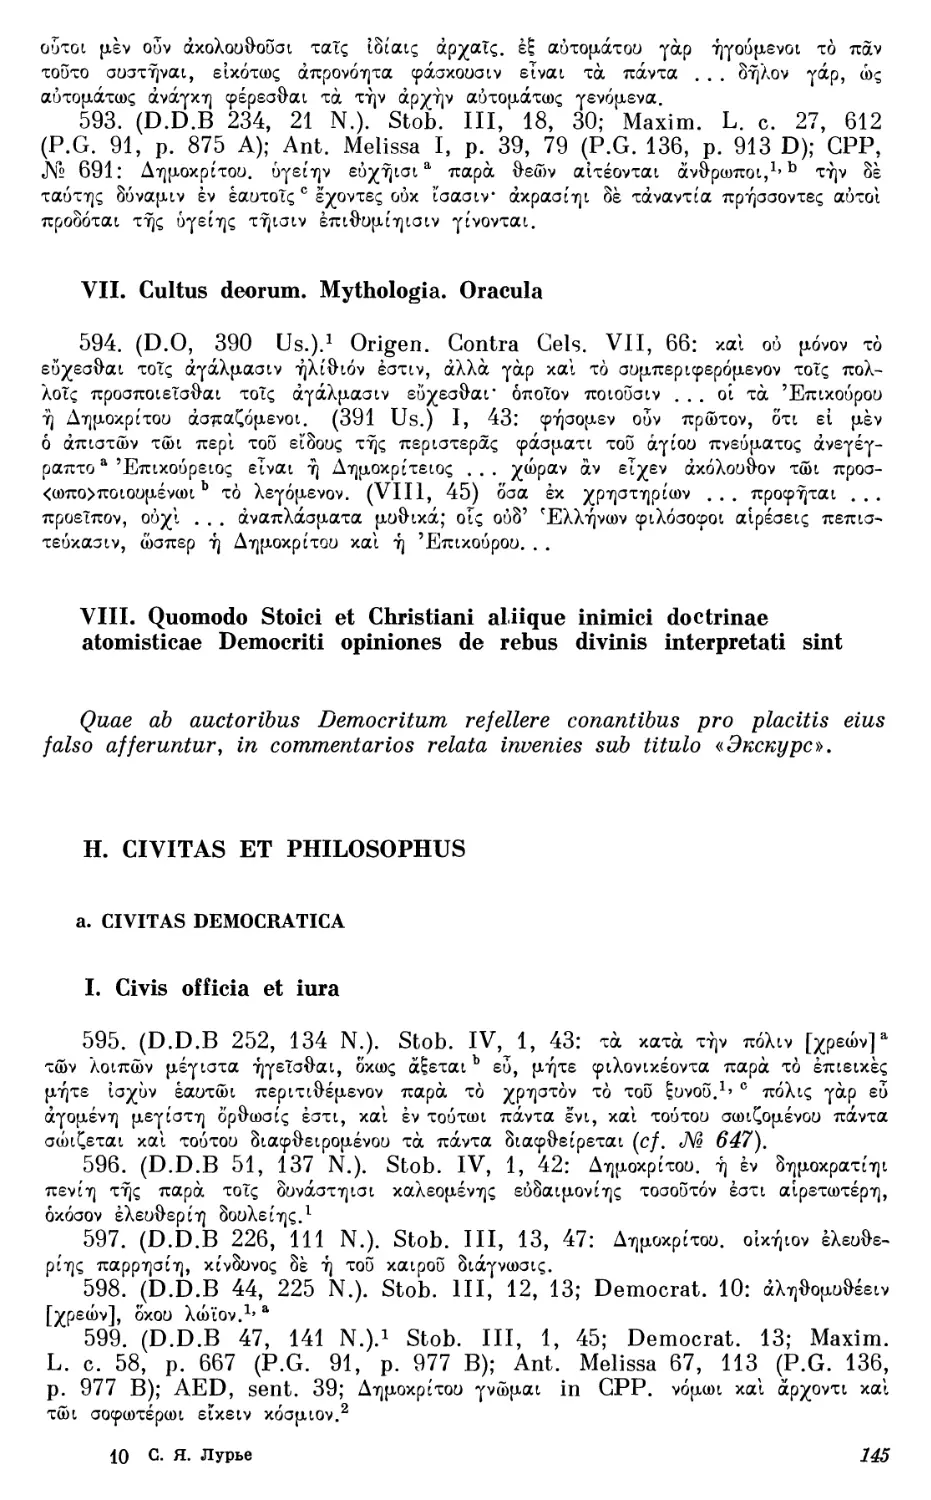 H. Civitas et philosophus